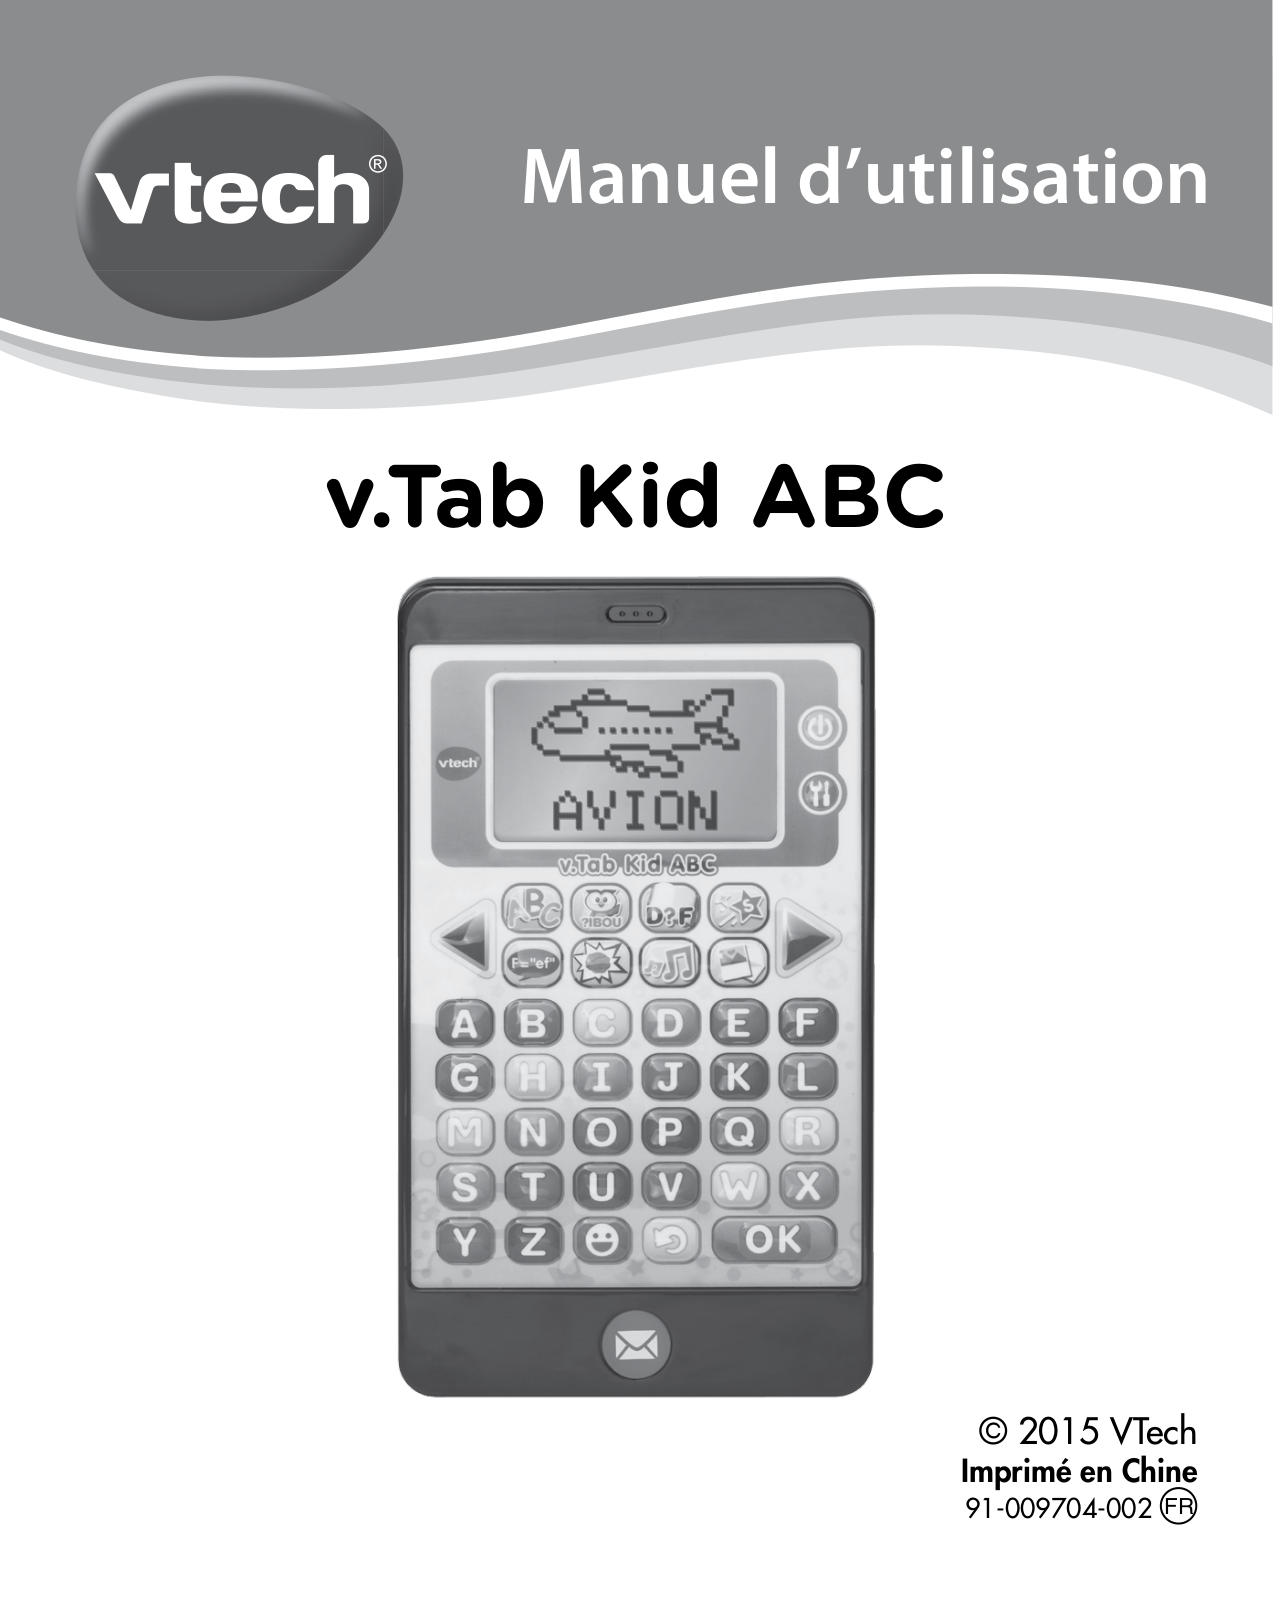 VTECH v.Tab Kid ABC Manuel d'utilisation